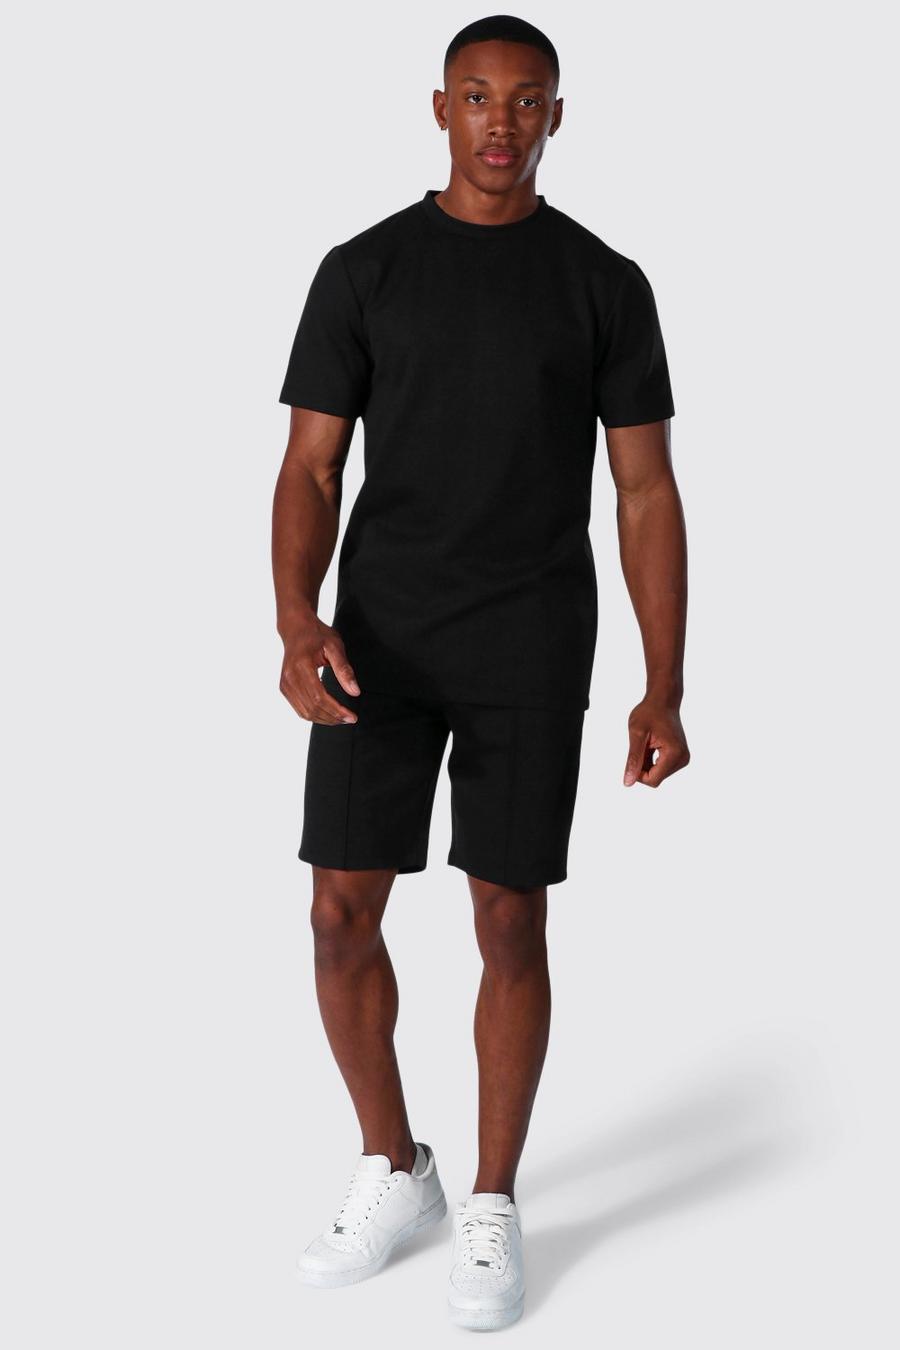 T-shirt jacquard et short - MAN, Black schwarz image number 1